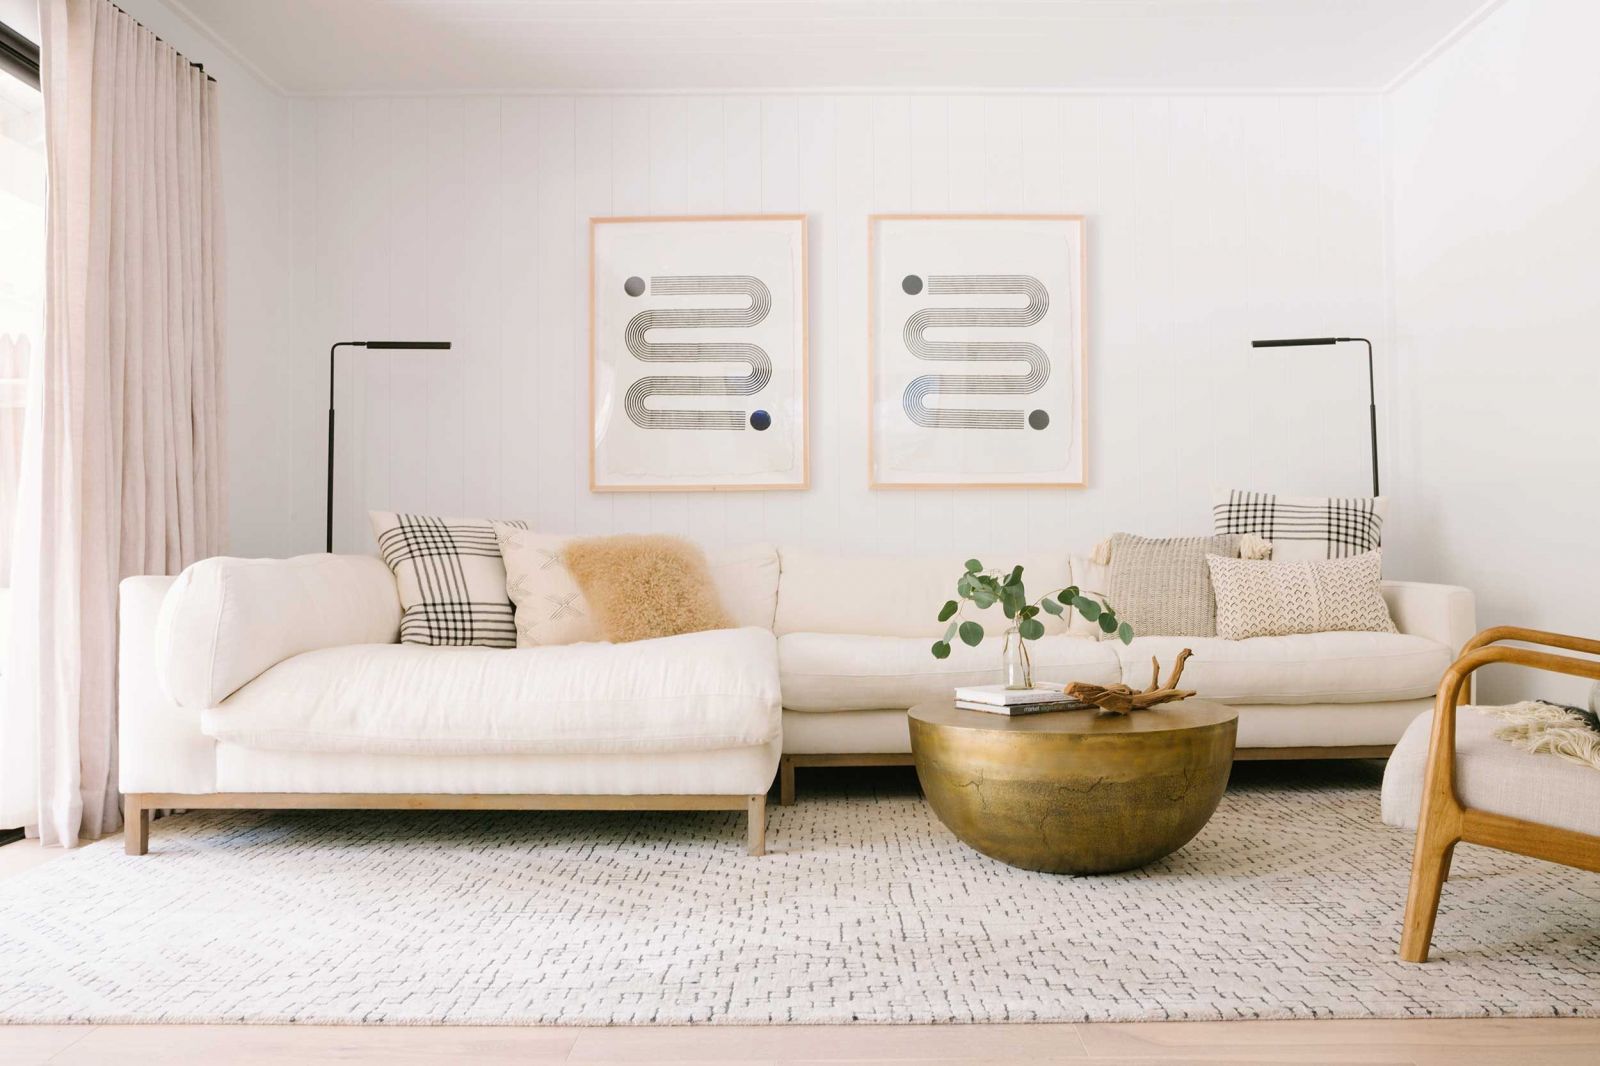 Mua gối sofa đẹp, chất lượng, giá cả hợp lý cho phòng khách